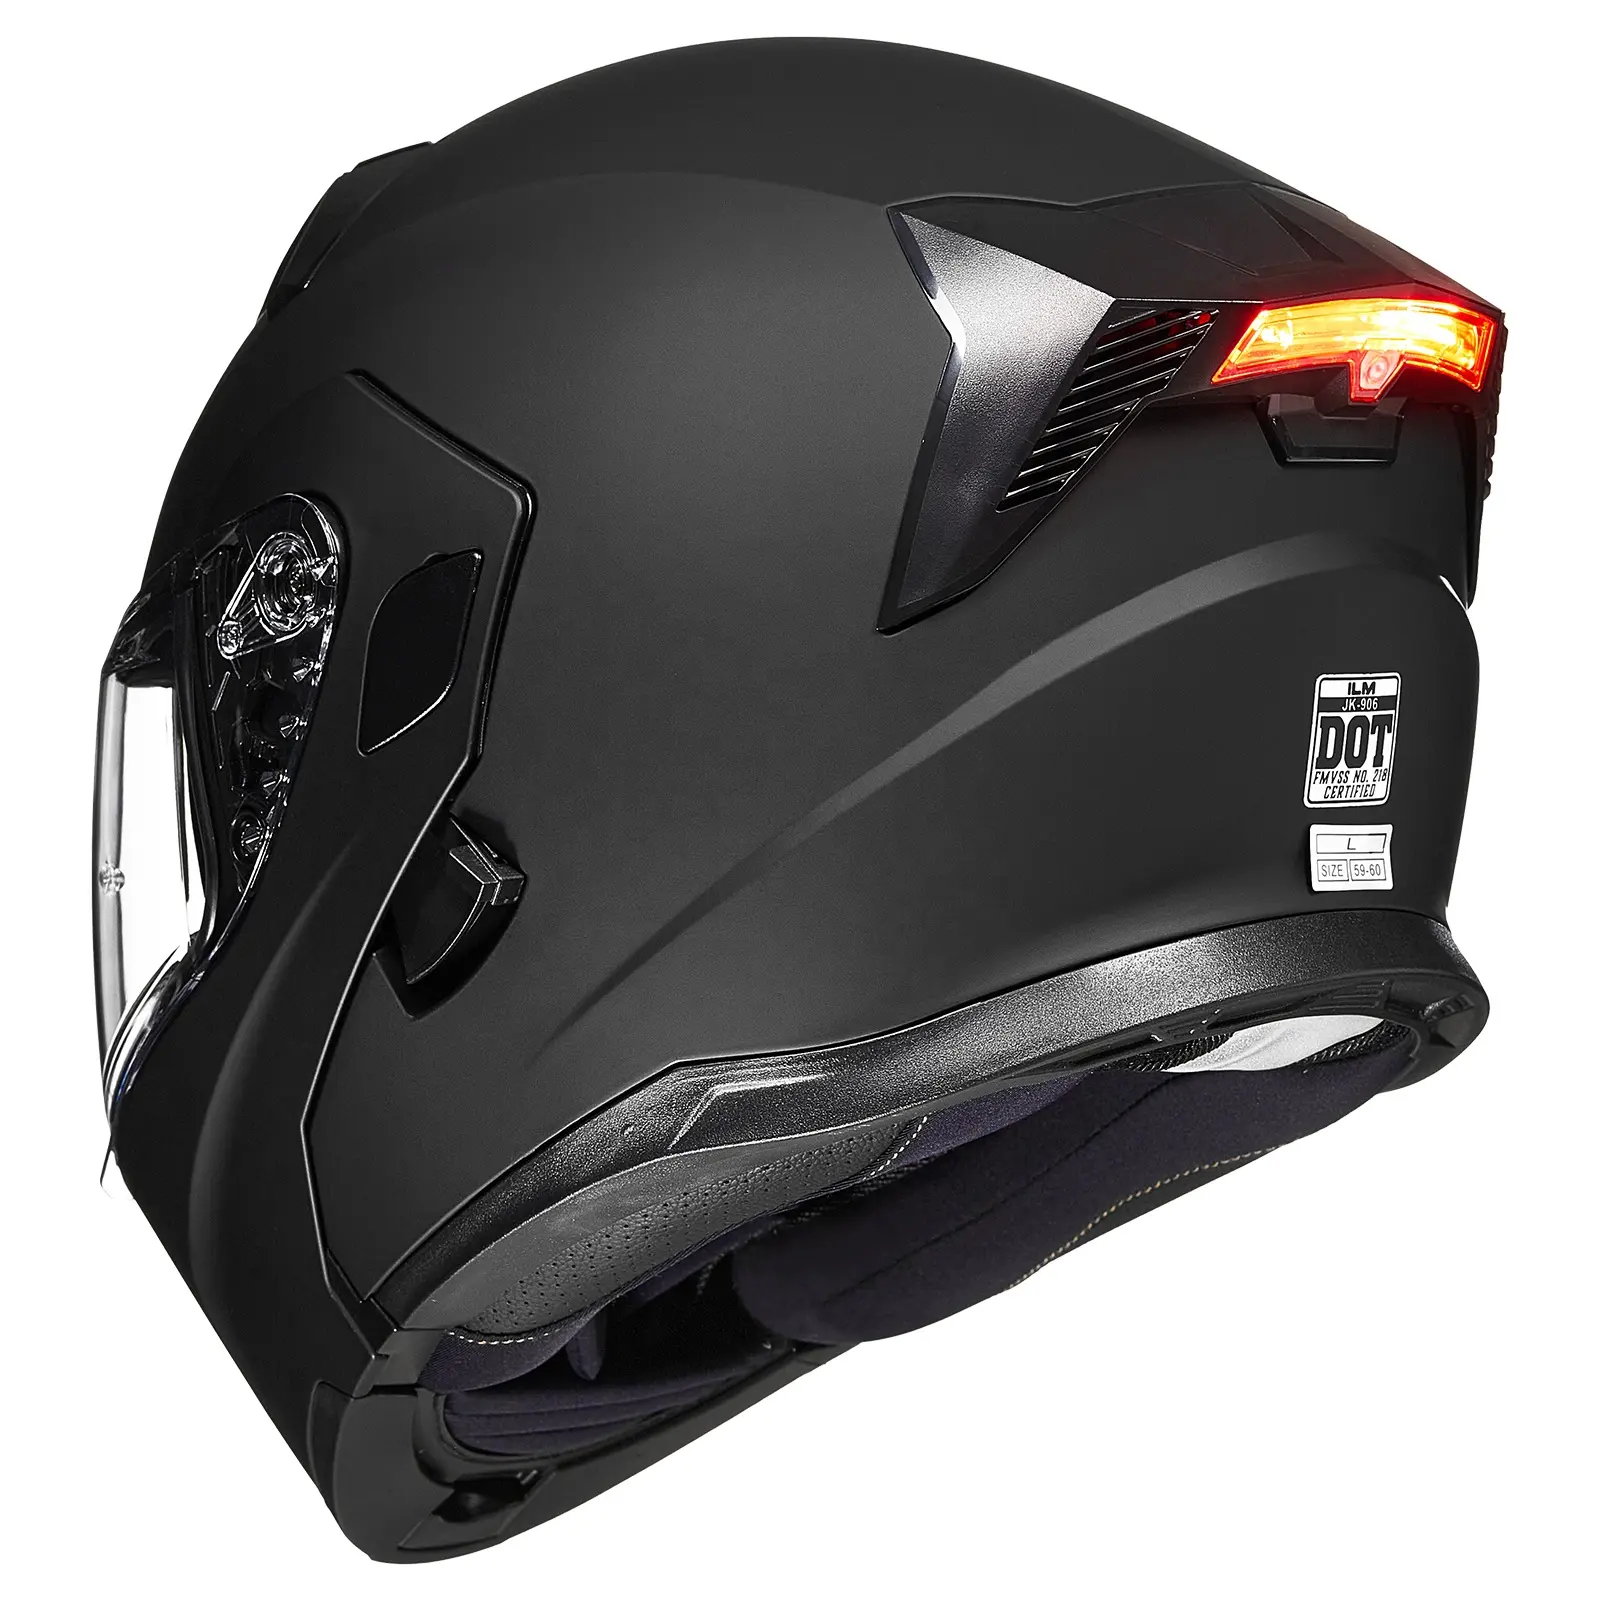 Prezzo competitivo qualità superiore ILM moto doppia visiera Flip up casco modulare DOT LED Light Model 906L